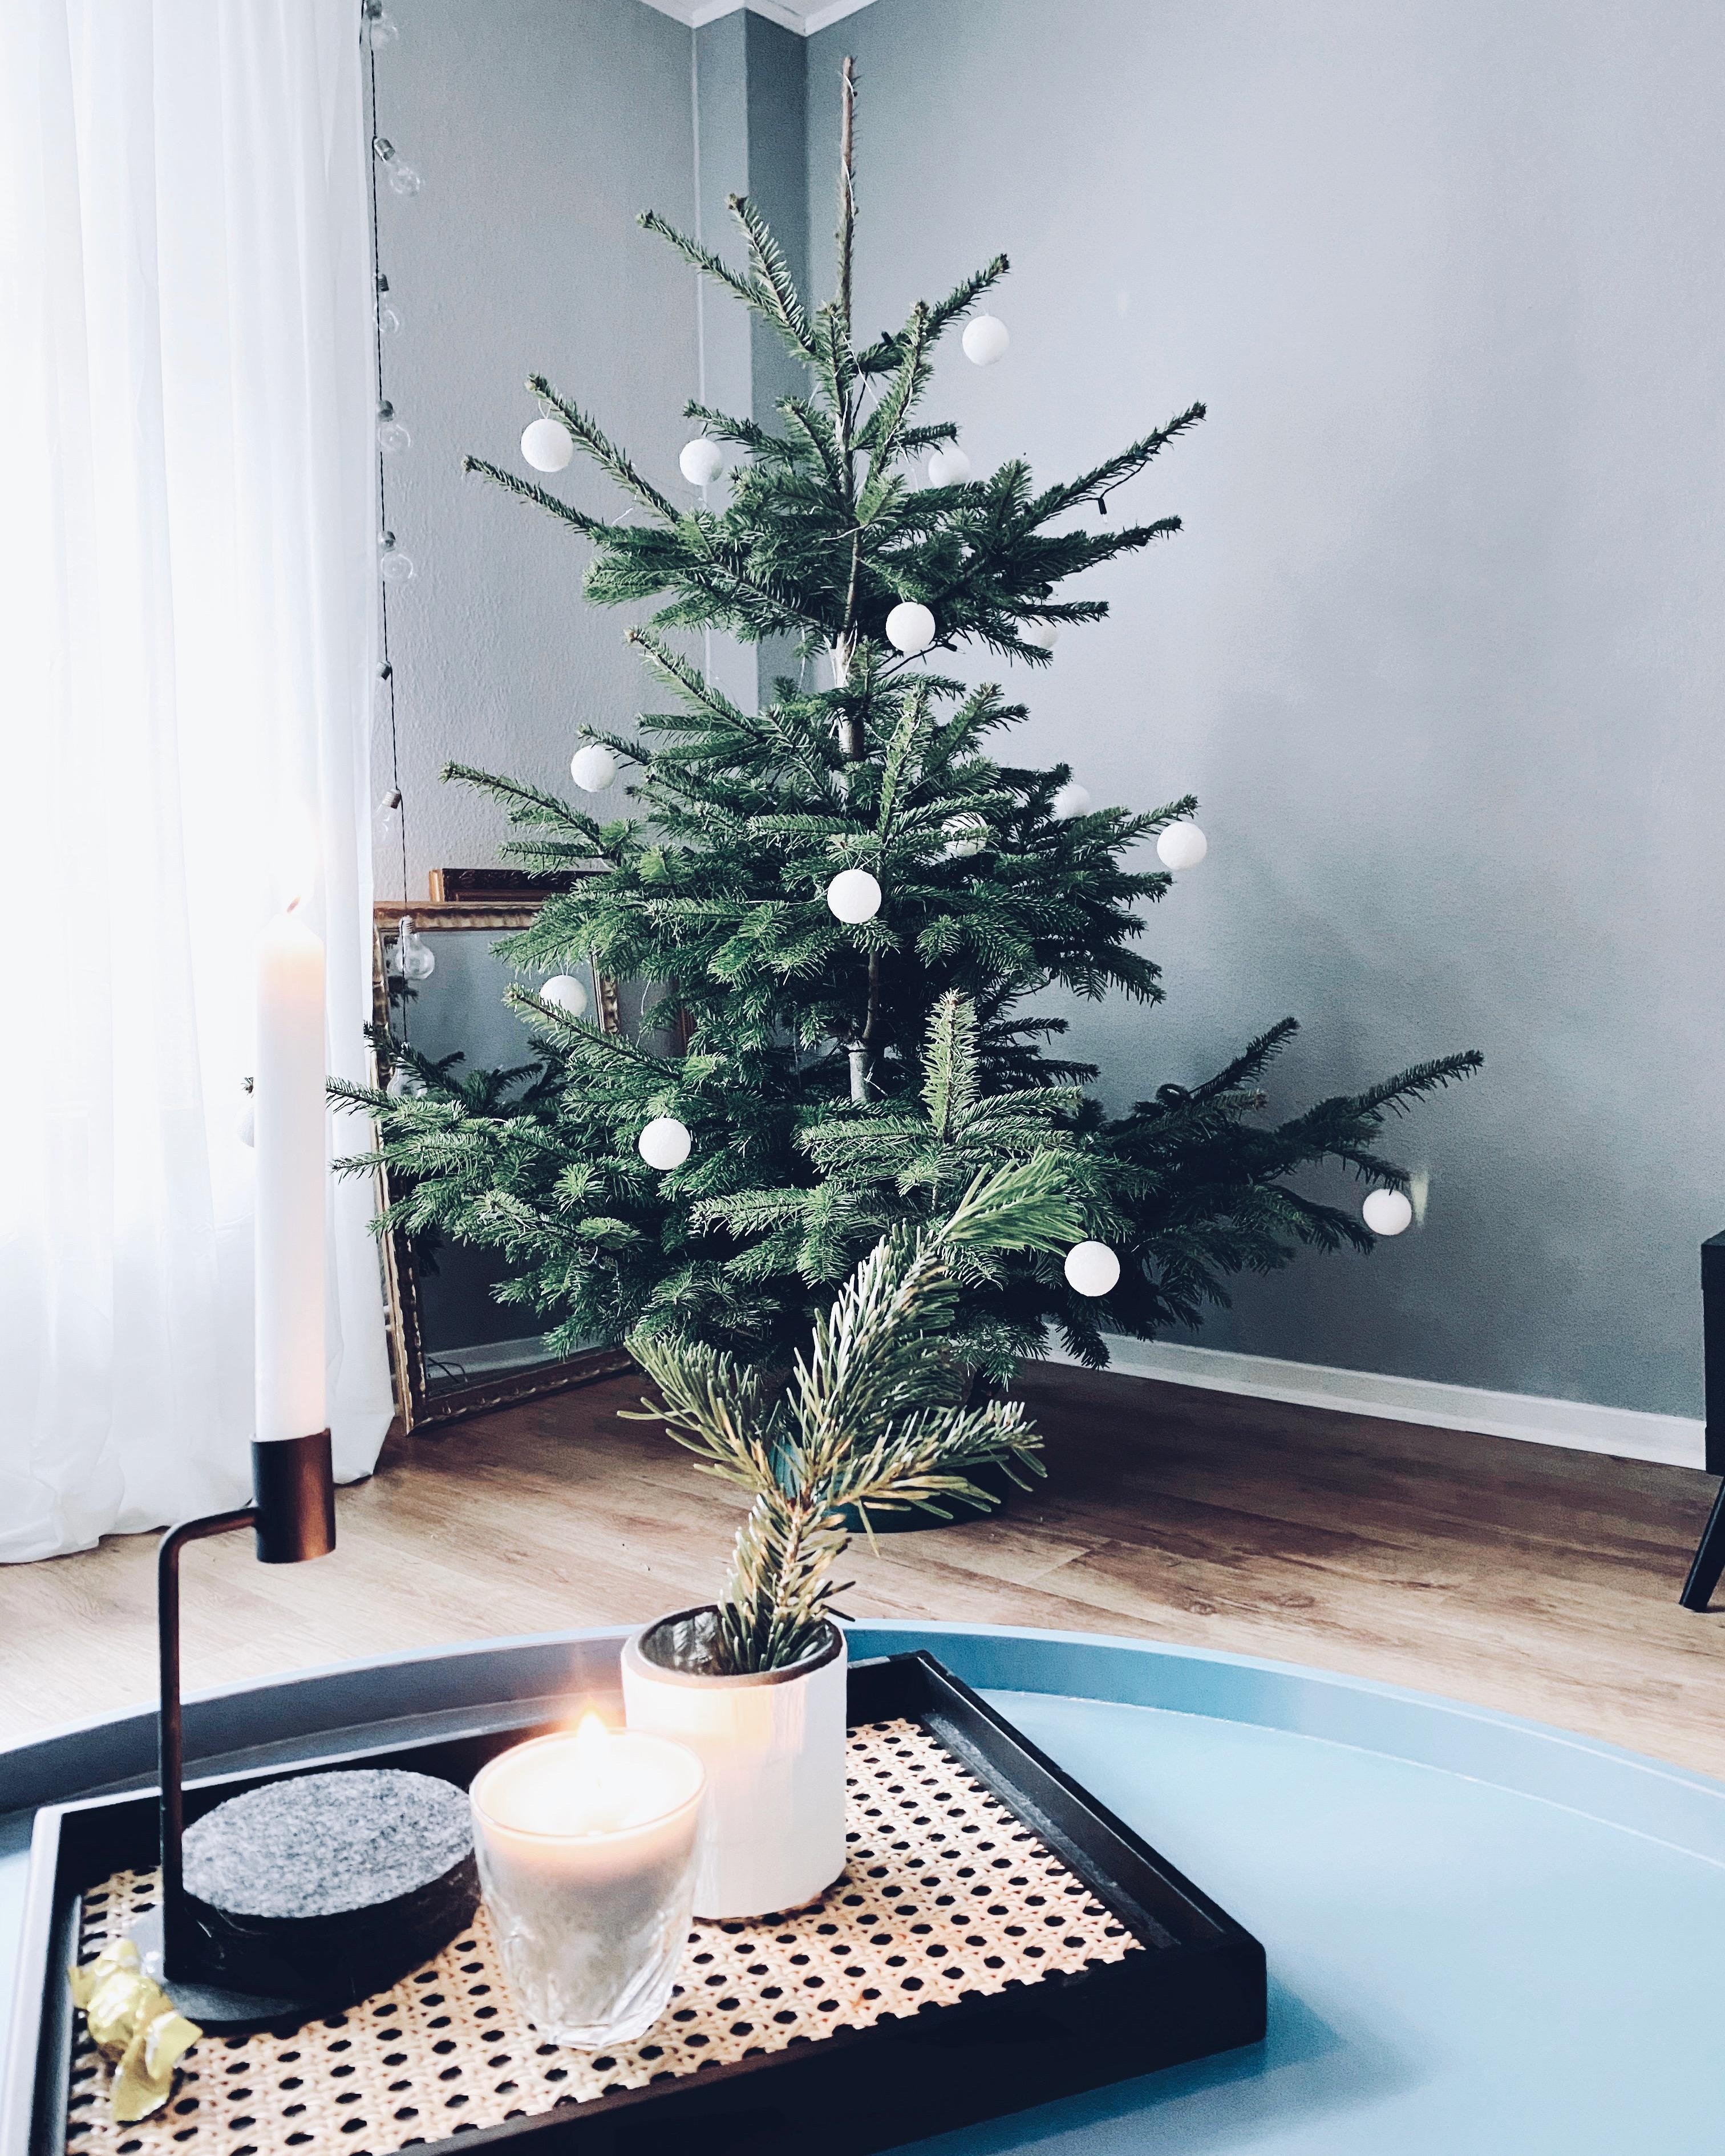 2.Weihnachtstag - es wird nur noch entspannt 😌 
#xmas #interior #weihnachtsbaum #nordicroom #scandinavianliving #hygge